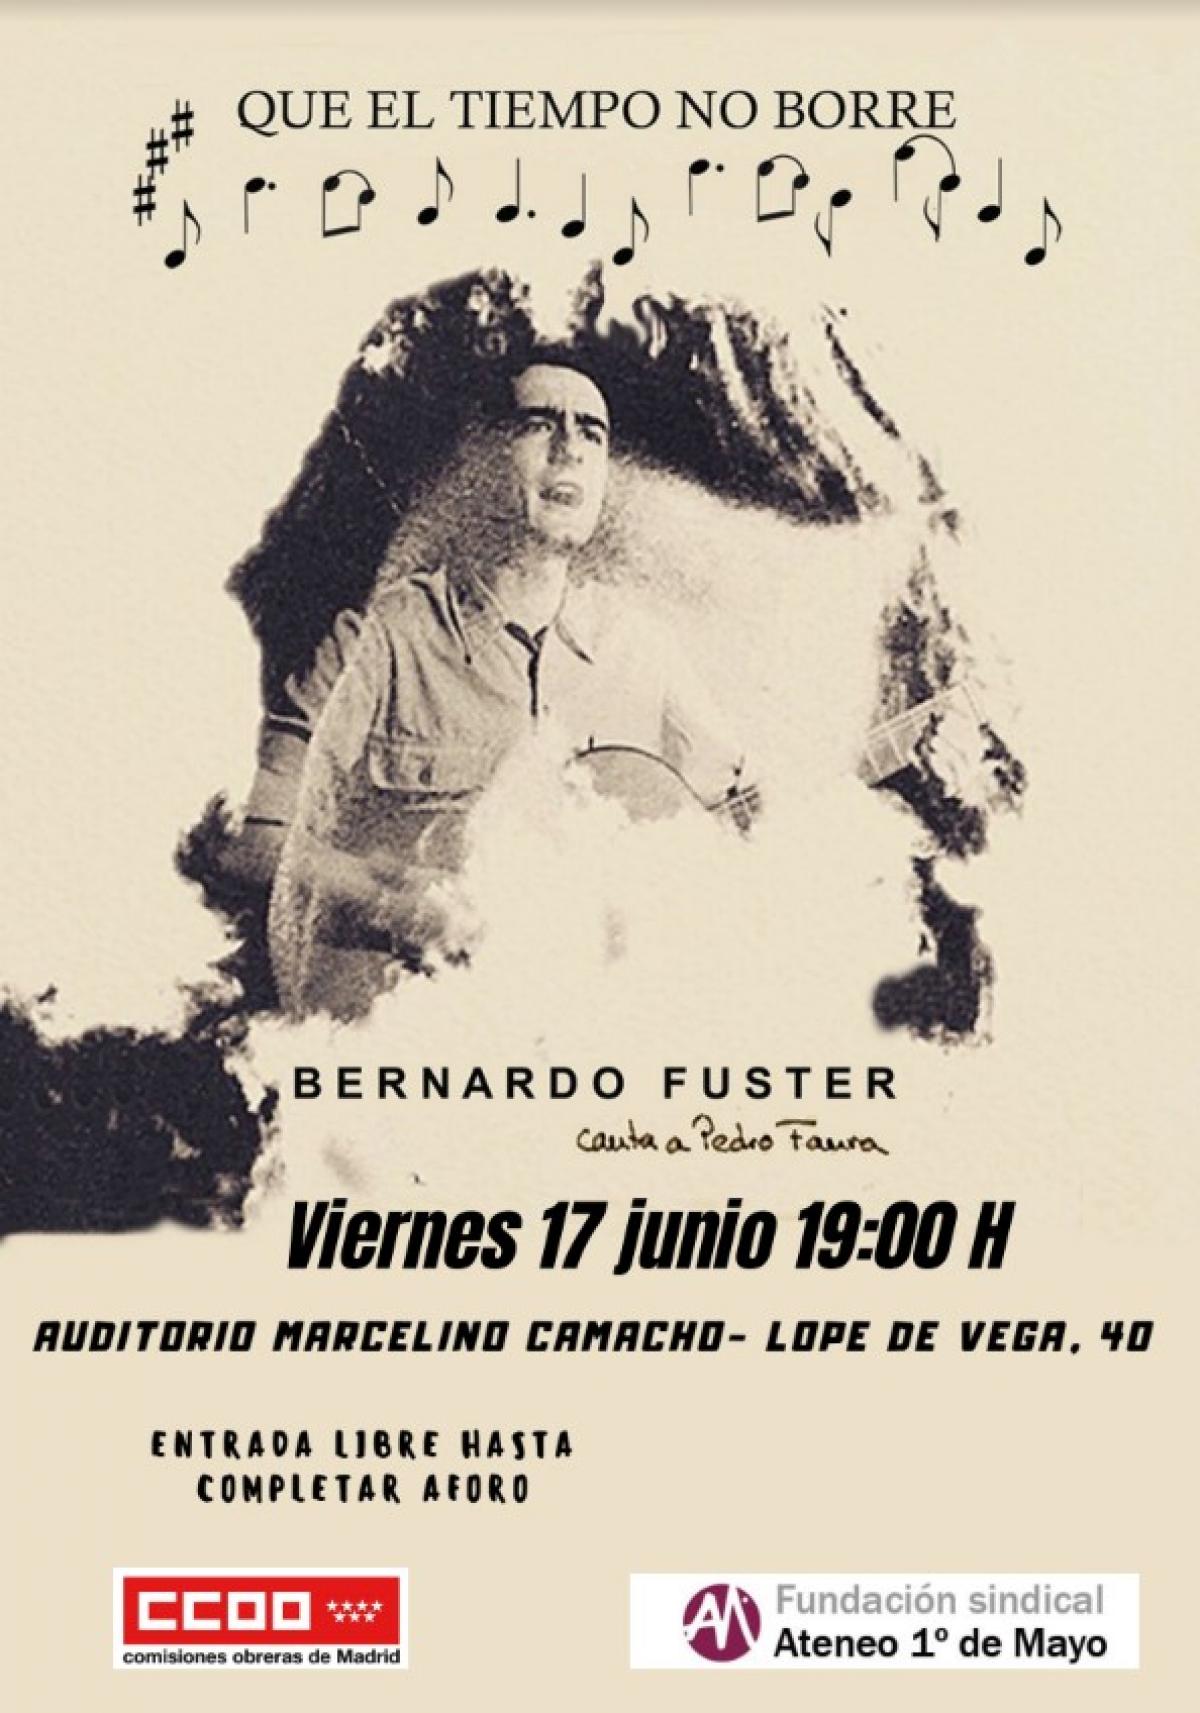 Bernardo Fuster canta a Pedro Faura